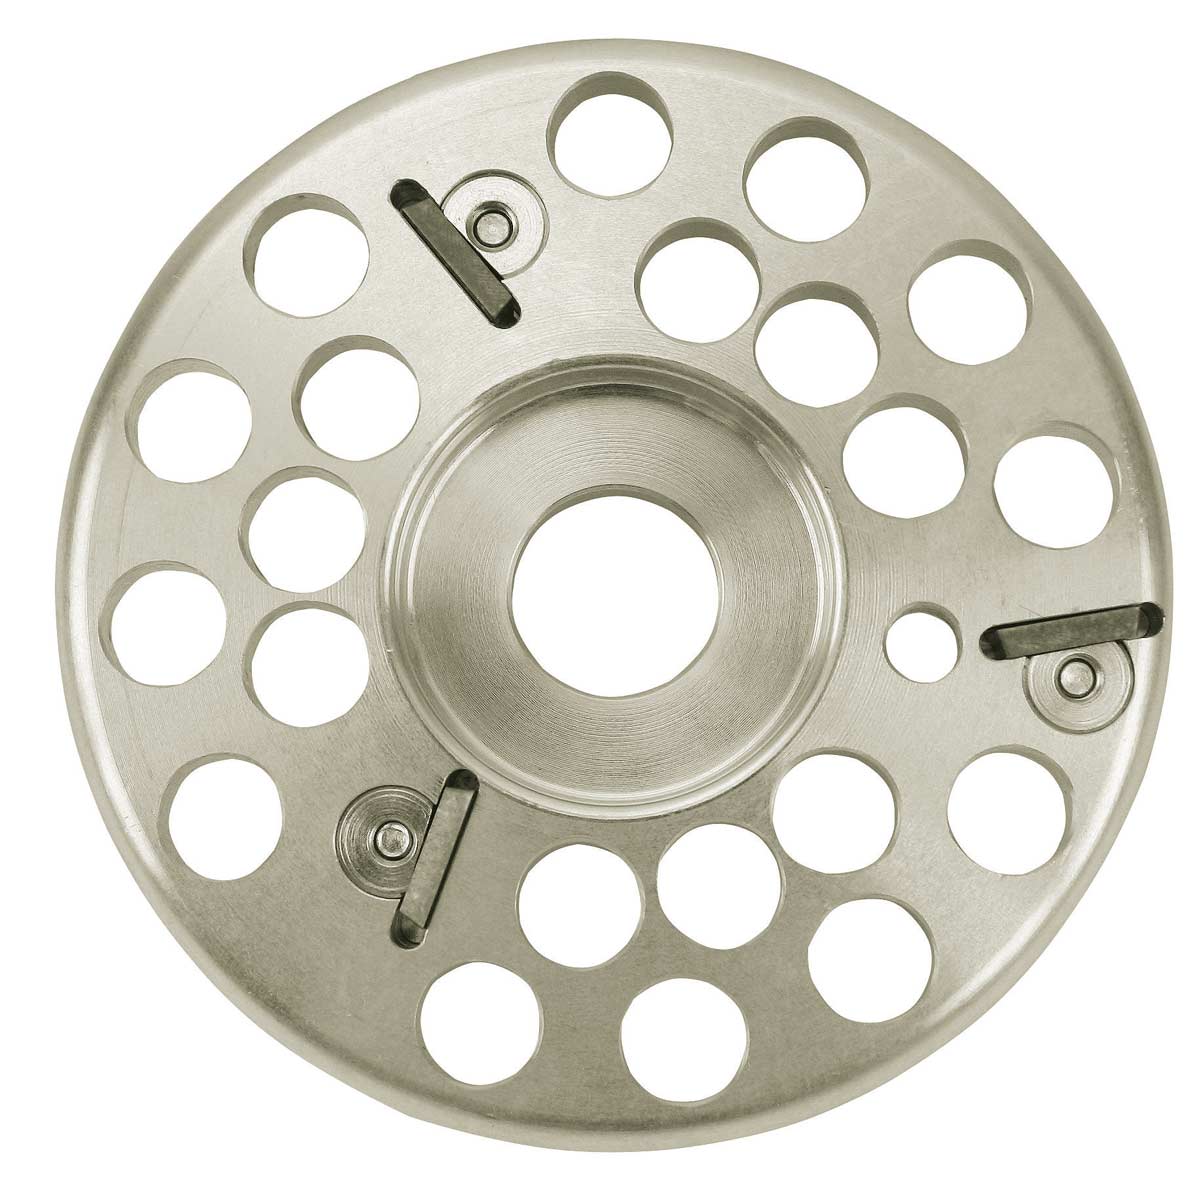 Cutting disc Ø 120 mm aluminium Profi 3 cut